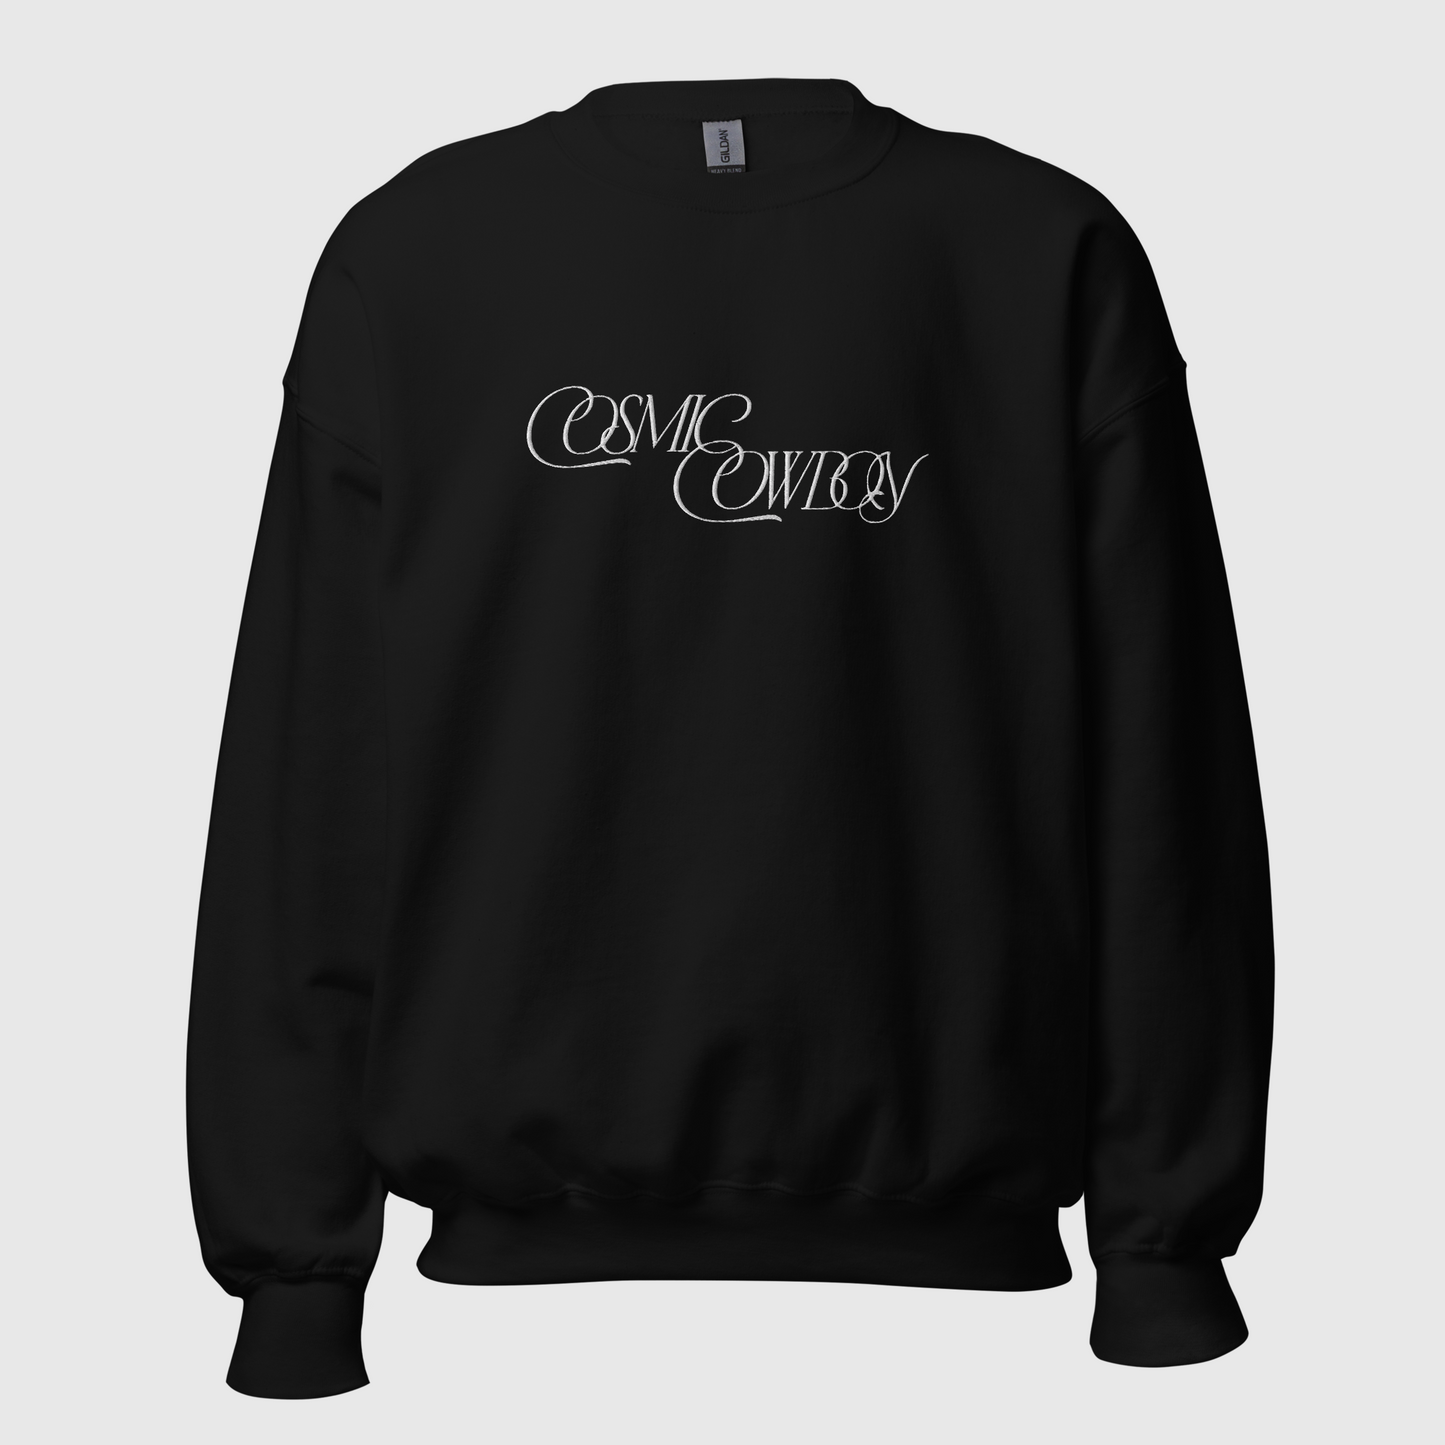 Cosmic Cowboy Embroidered Sweatshirt